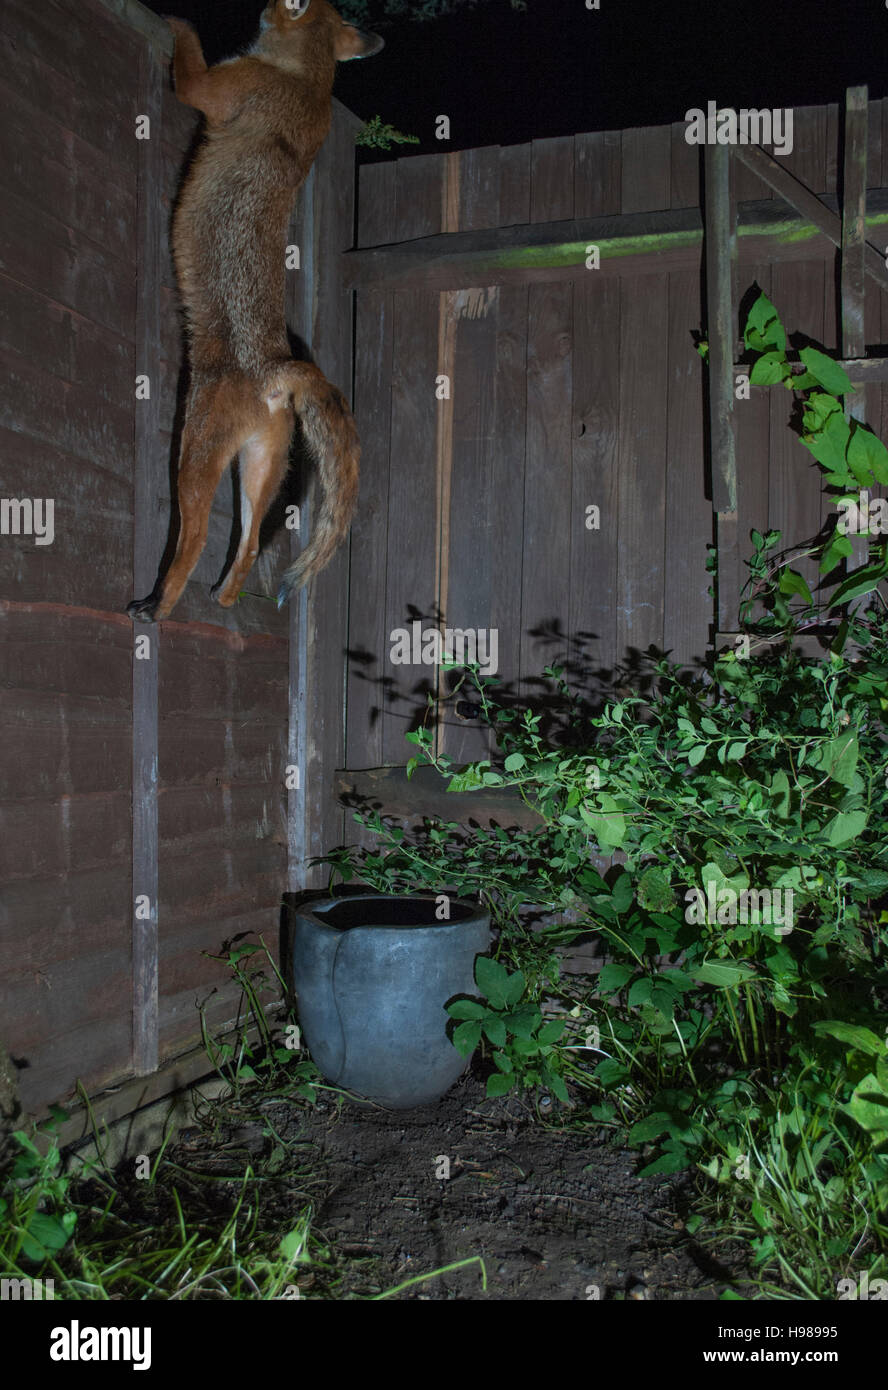 Le renard roux, l'Urbain (Vulpes vulpes), grimpe sur une clôture de nuit dans un jardin de Londres, Royaume-Uni Banque D'Images